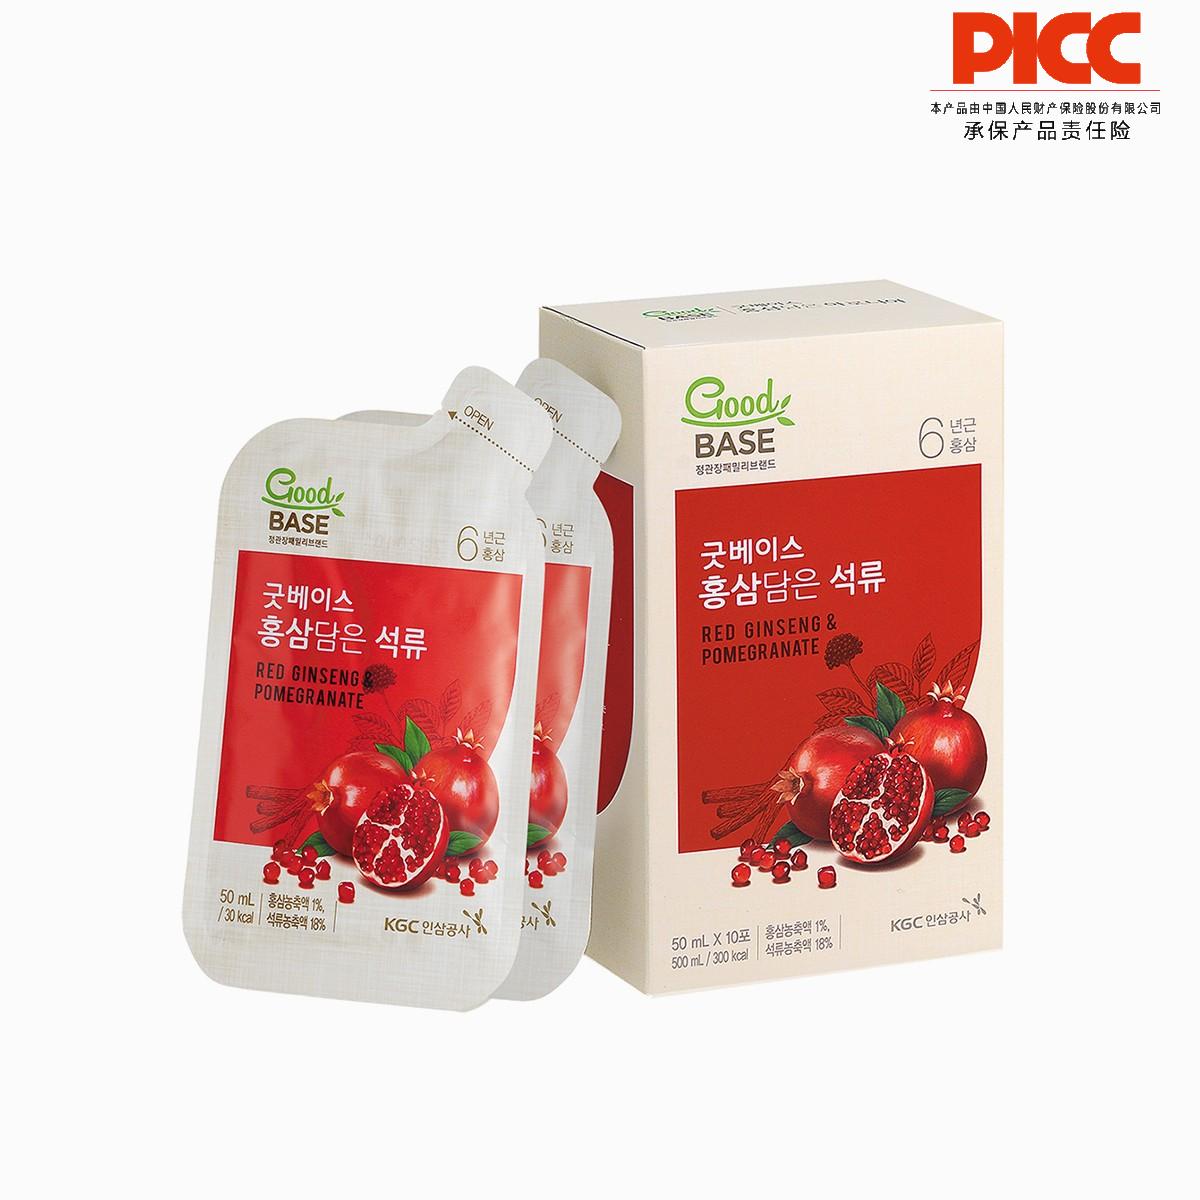 【保稅】韓國正官莊高麗參石榴飲料(50ML*30包)